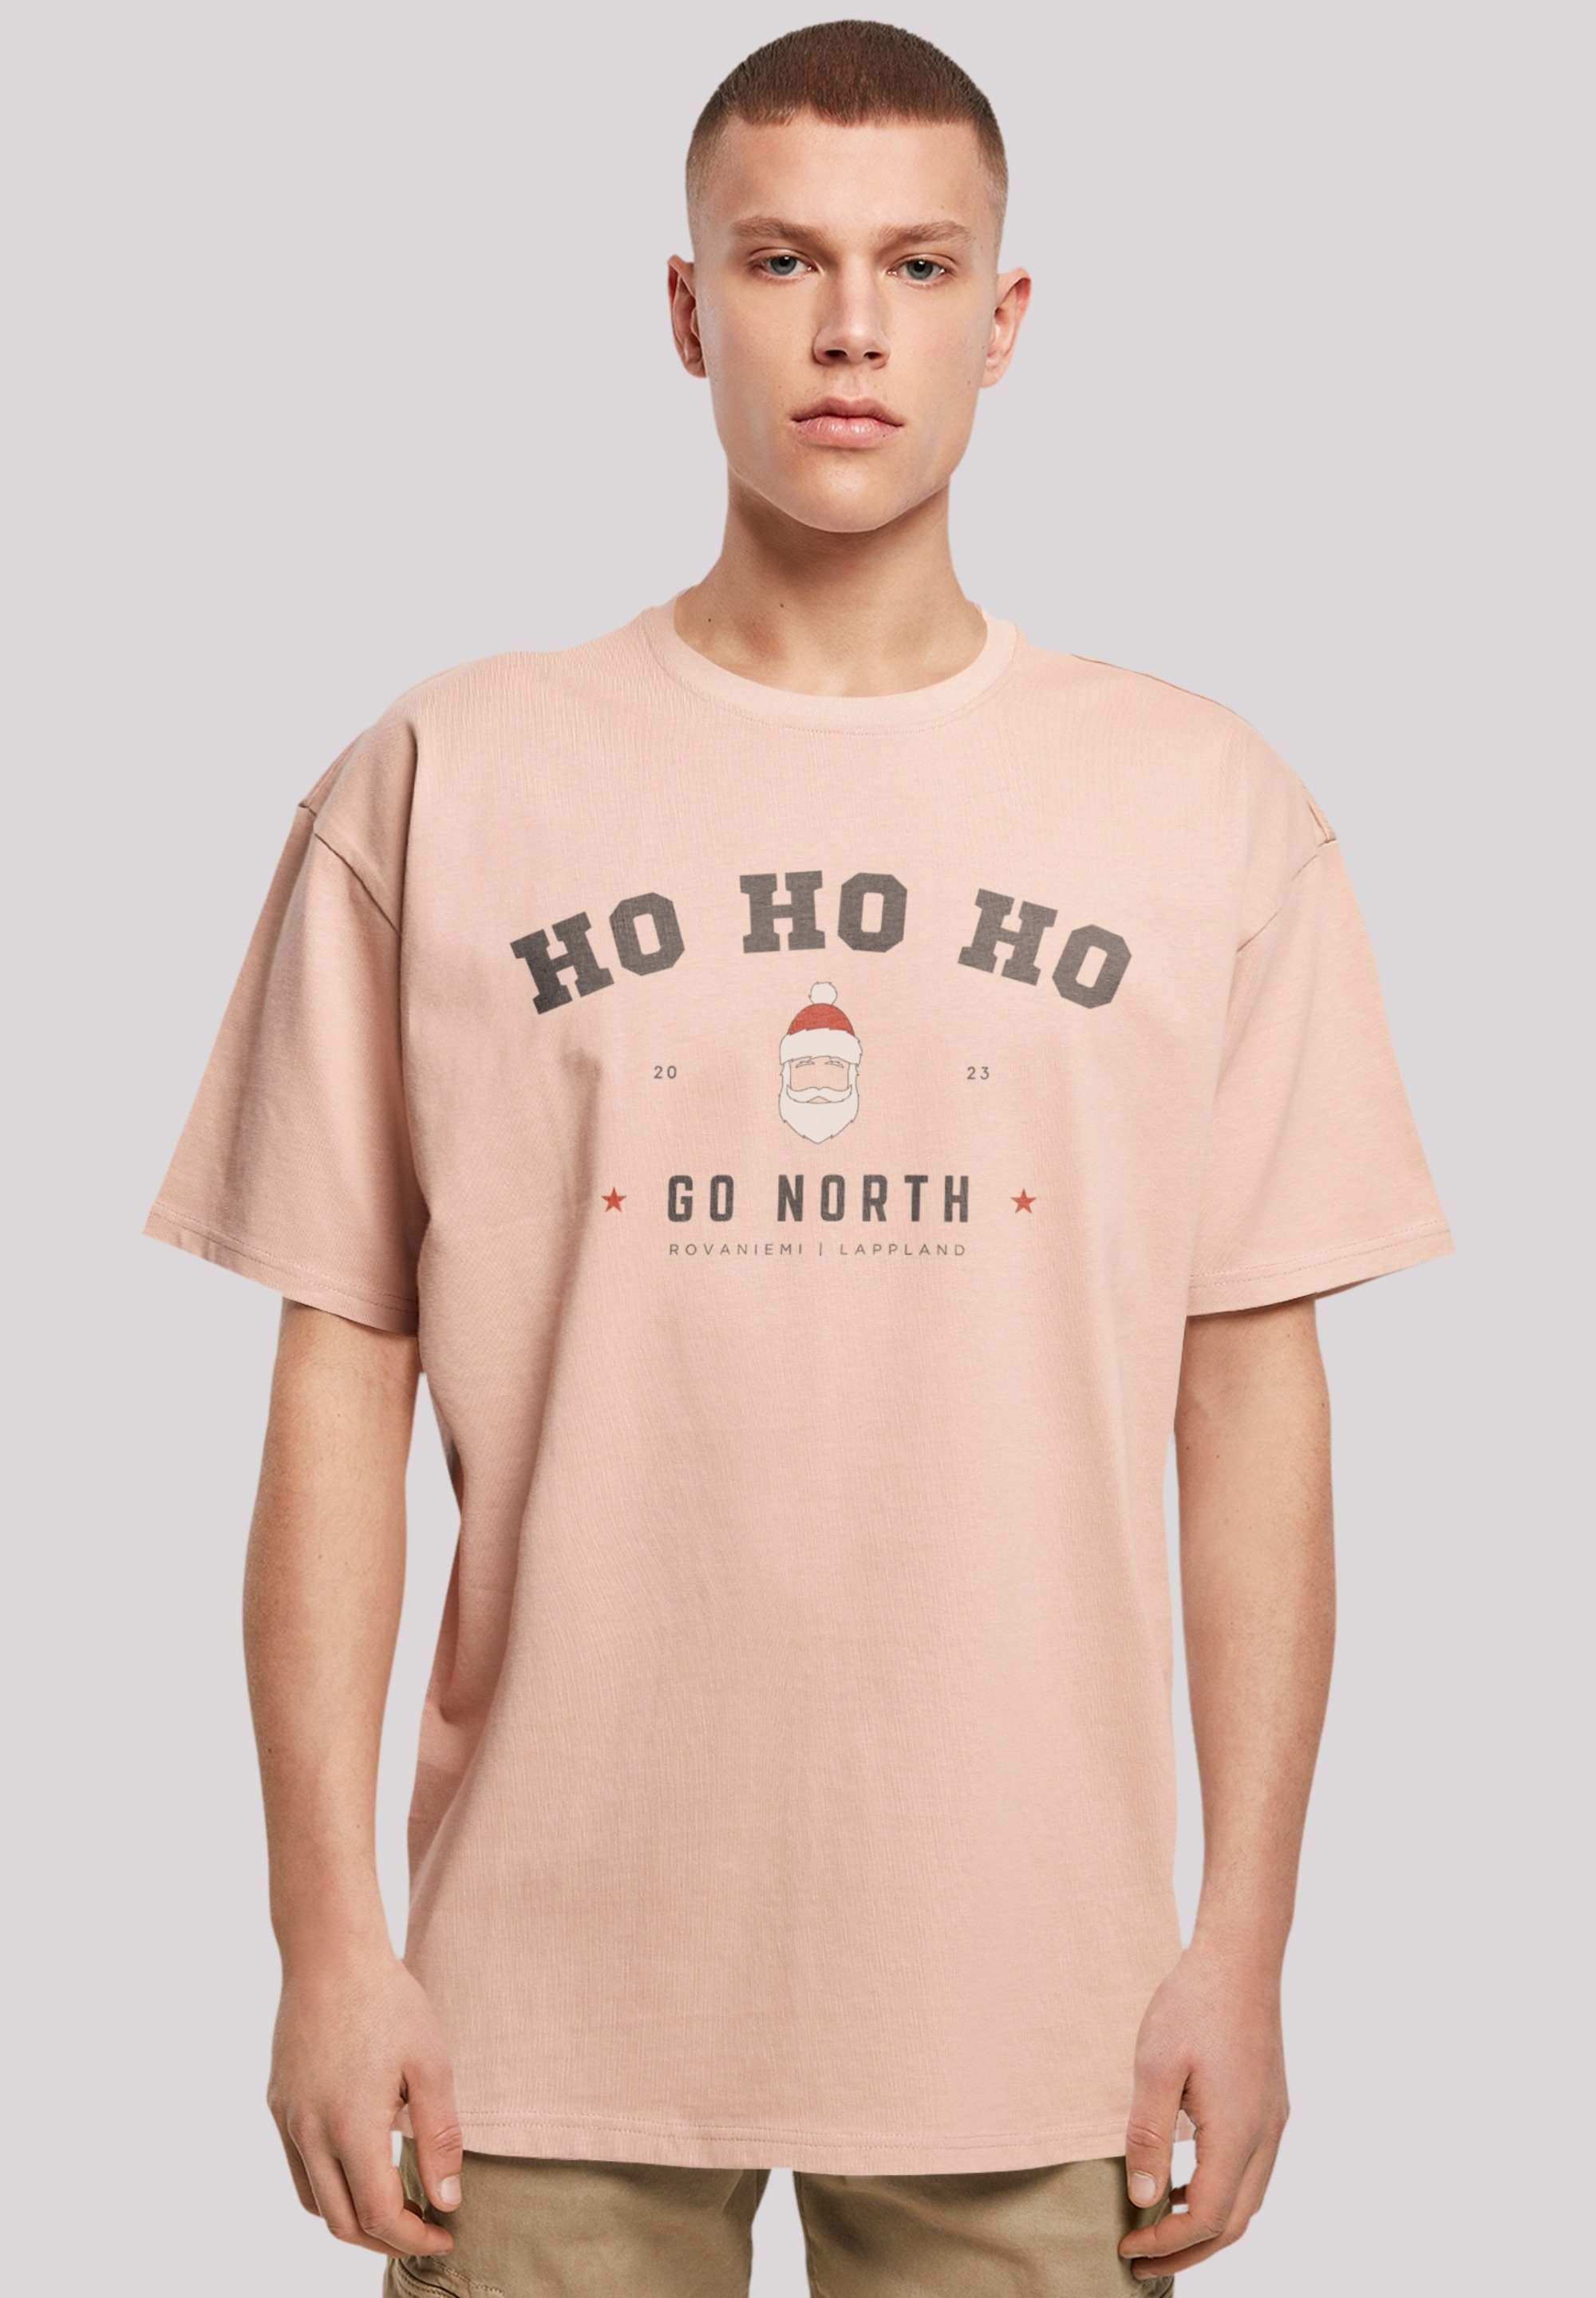 F4NT4STIC T-Shirt Ho Ho Claus Logo Geschenk, Ho Santa Weihnachten, Weihnachten amber